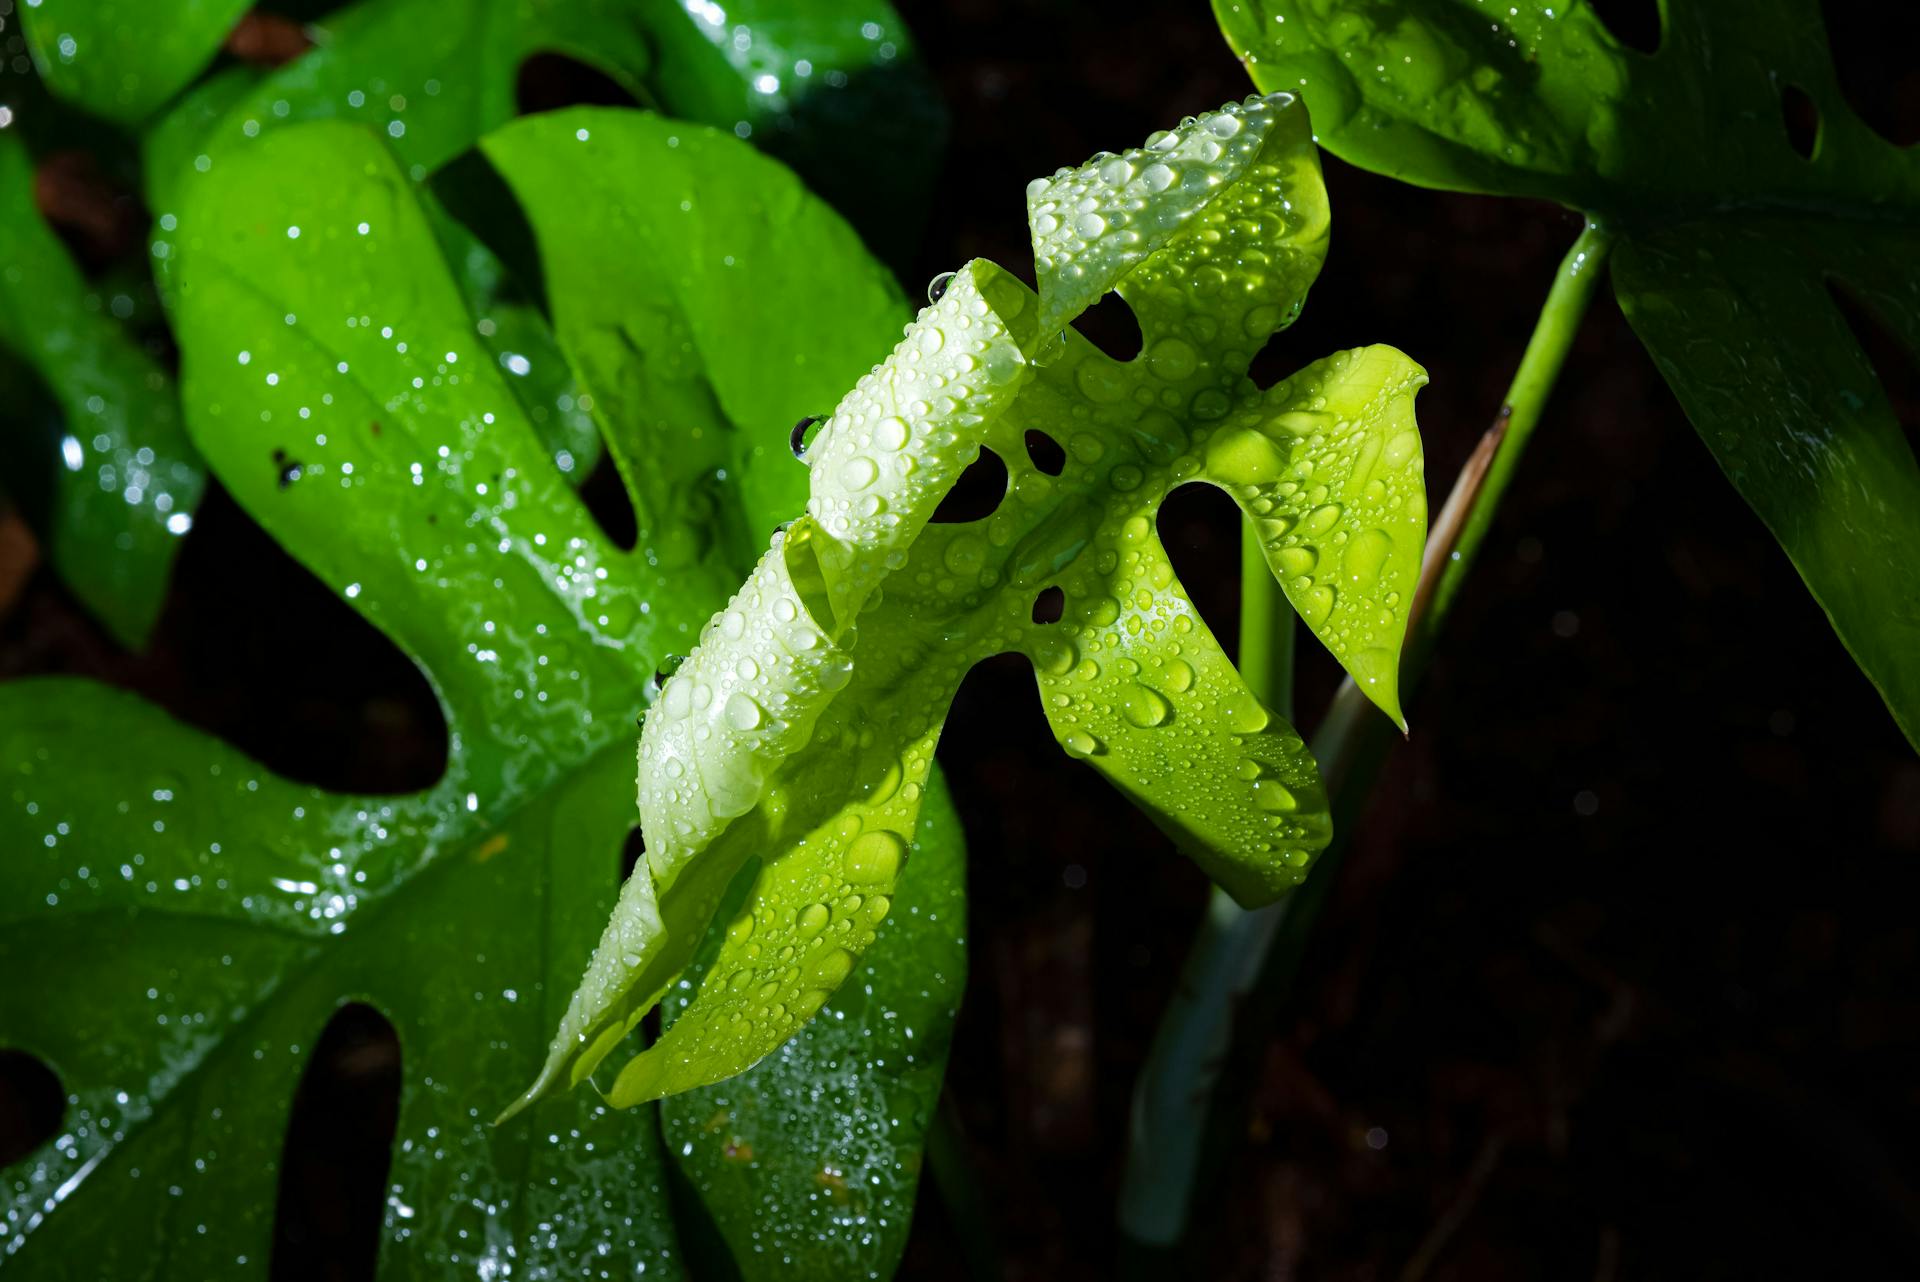 Rhaphidophora leaves